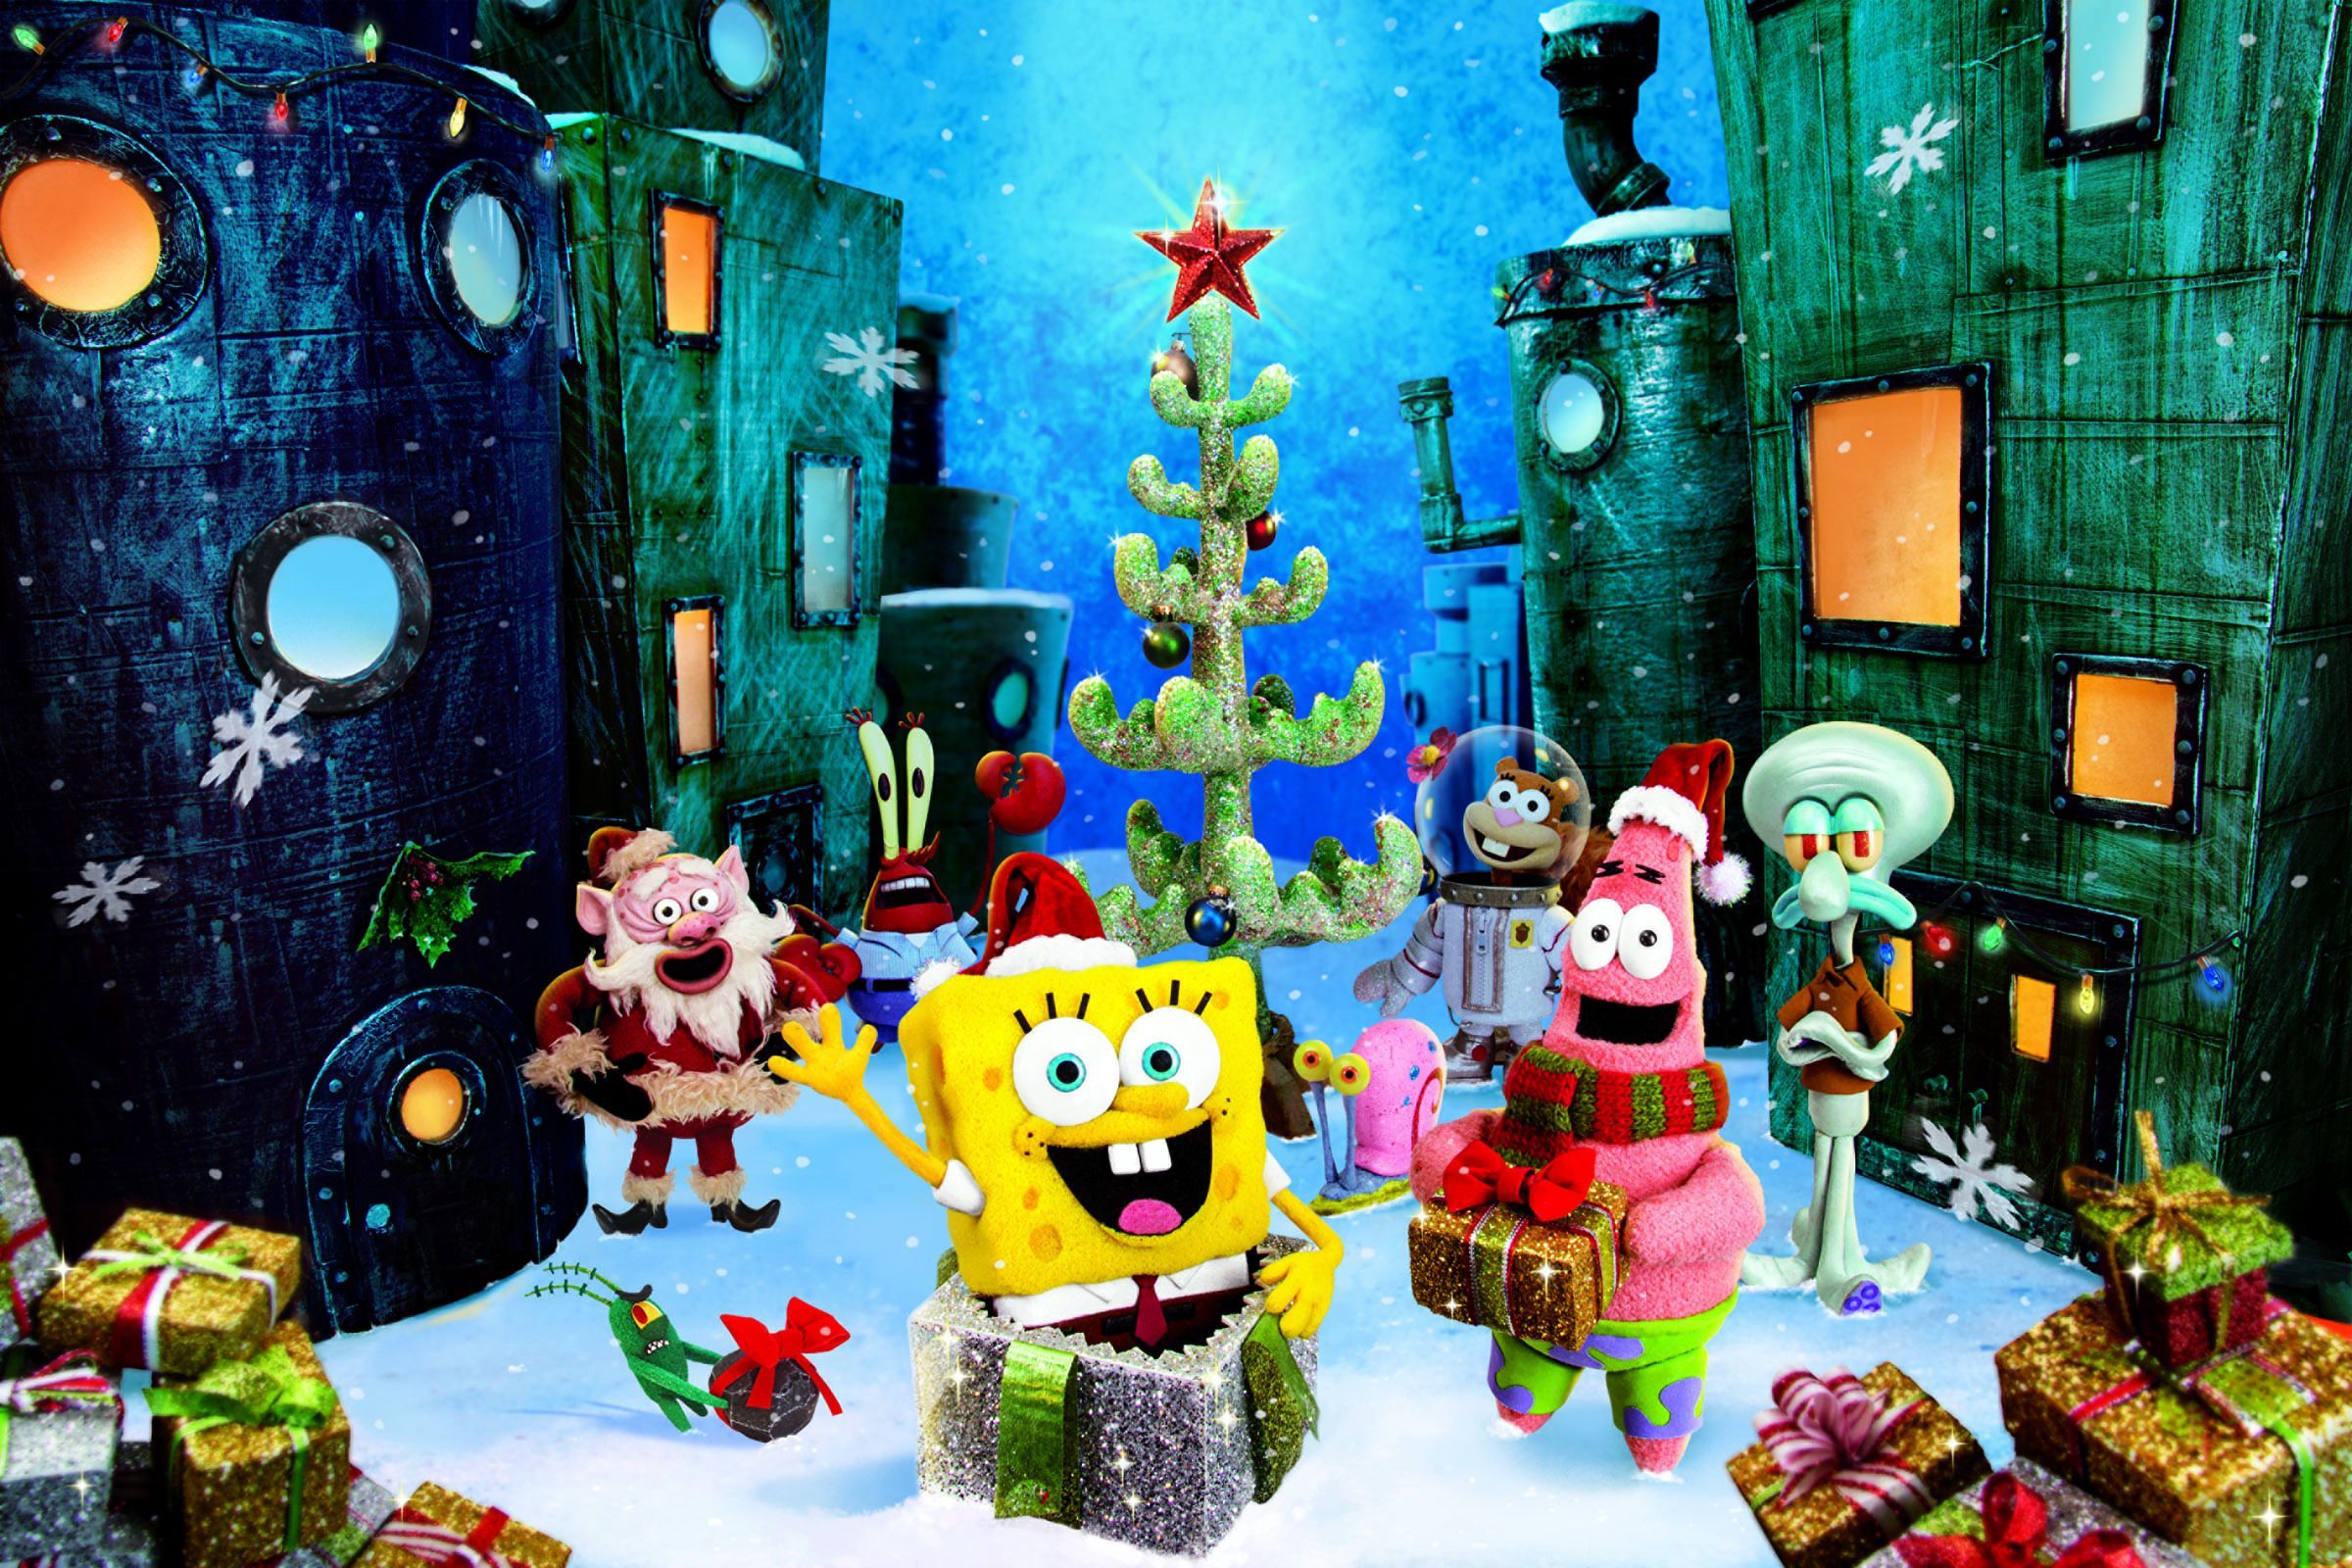 Giáng sinh đang đến gần, hãy thay đổi không khí màn hình điện thoại của bạn bằng hình nền Giáng sinh của SpongeBob thật đáng yêu. Với cảnh quay tuyệt đẹp có núi tuyết và hình ảnh điện thoại ngộ nghĩnh, hình nền này sẽ mang đến cho bạn cảm giác ấm áp và vui tươi của mùa đông.